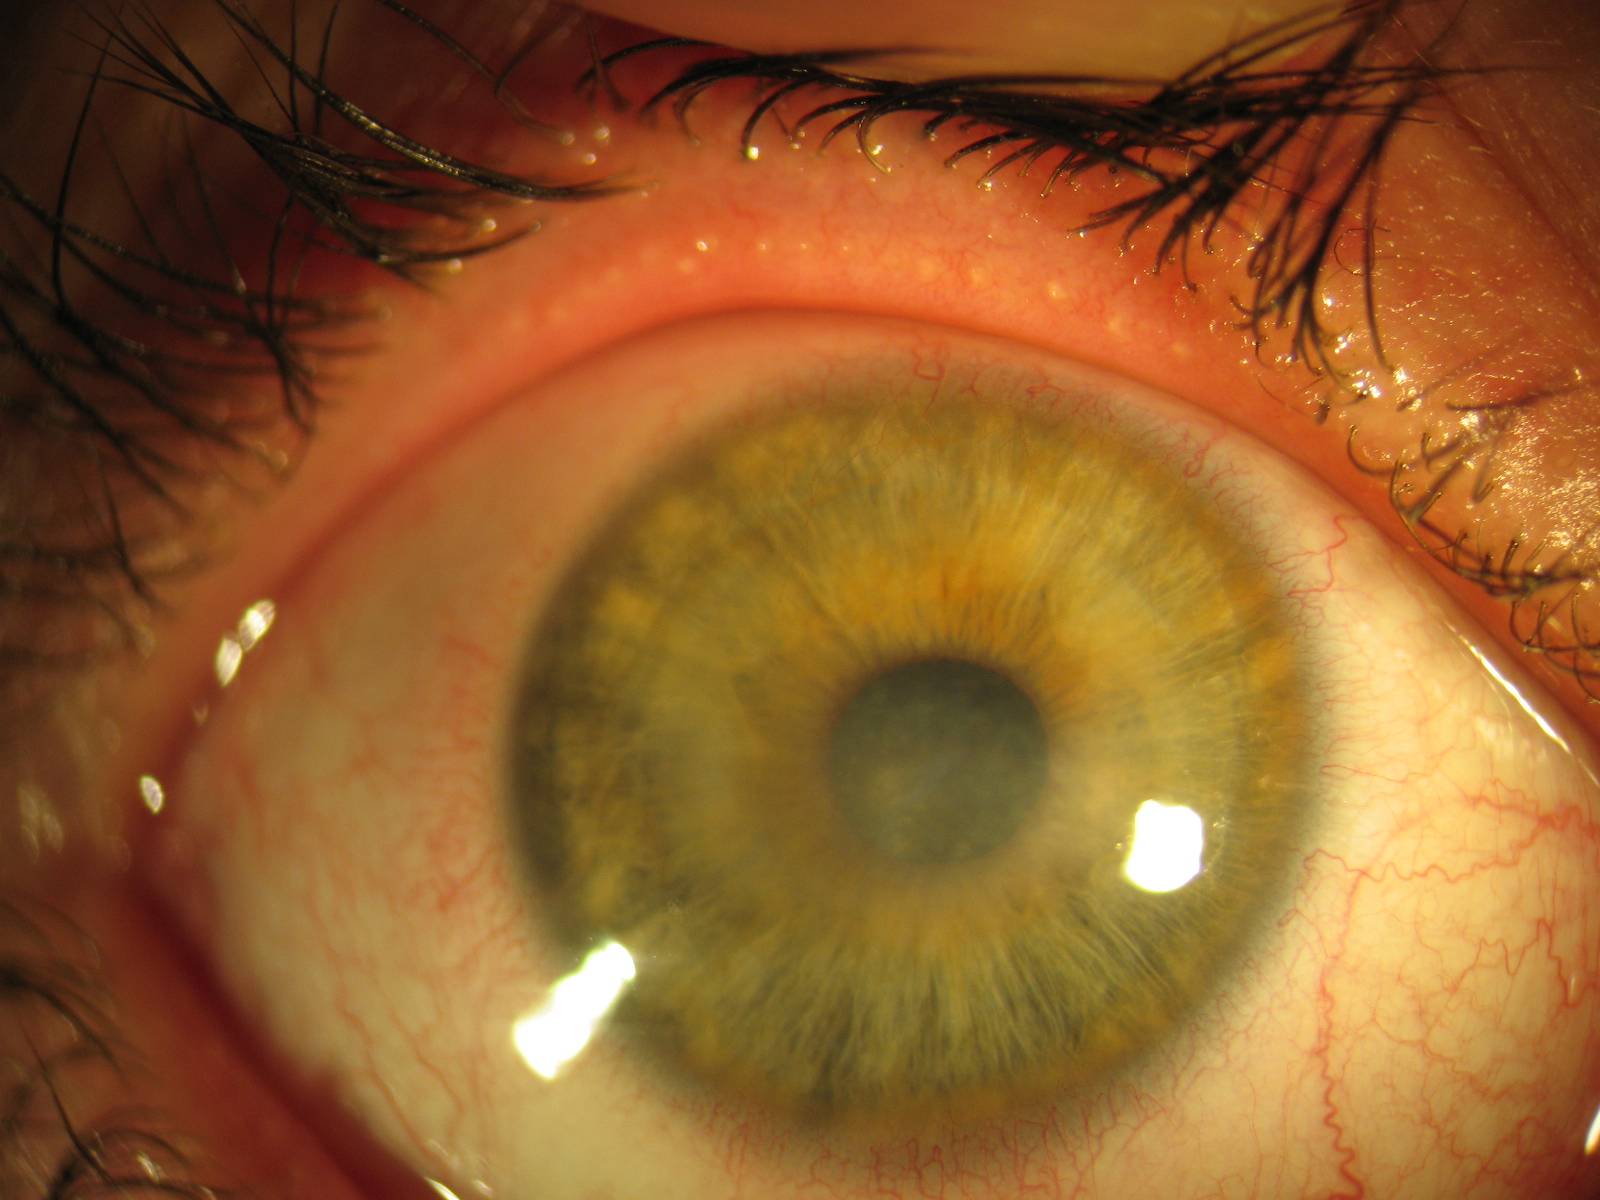 Отслоение роговицы глаза - симптомы, лечение, причины